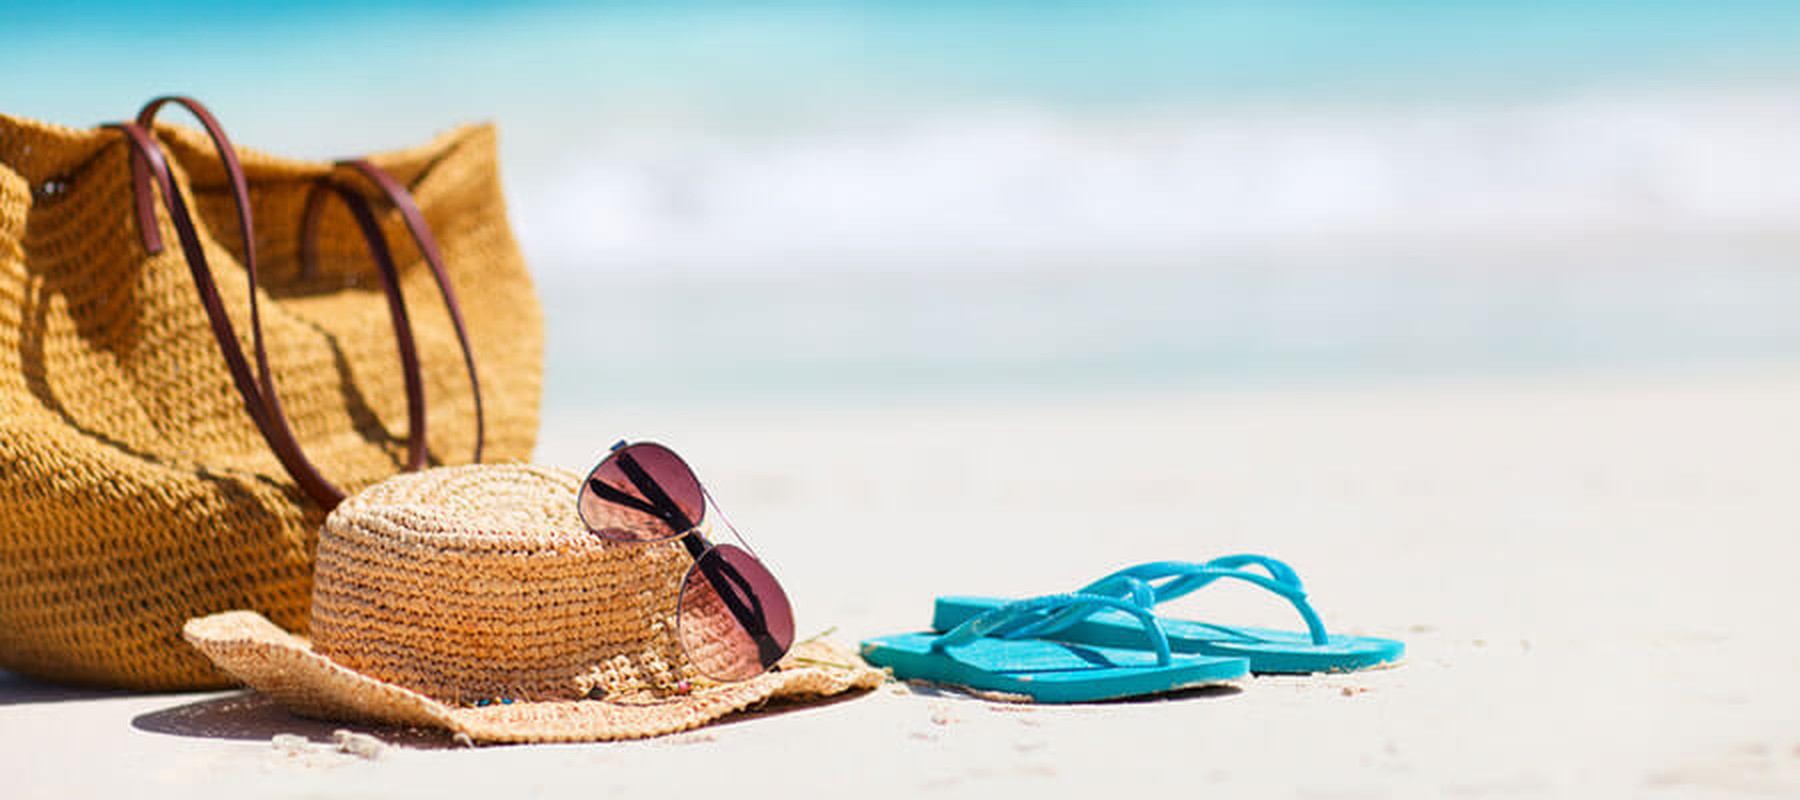 Prepara tus vacaciones de verano sin gastar demasiado